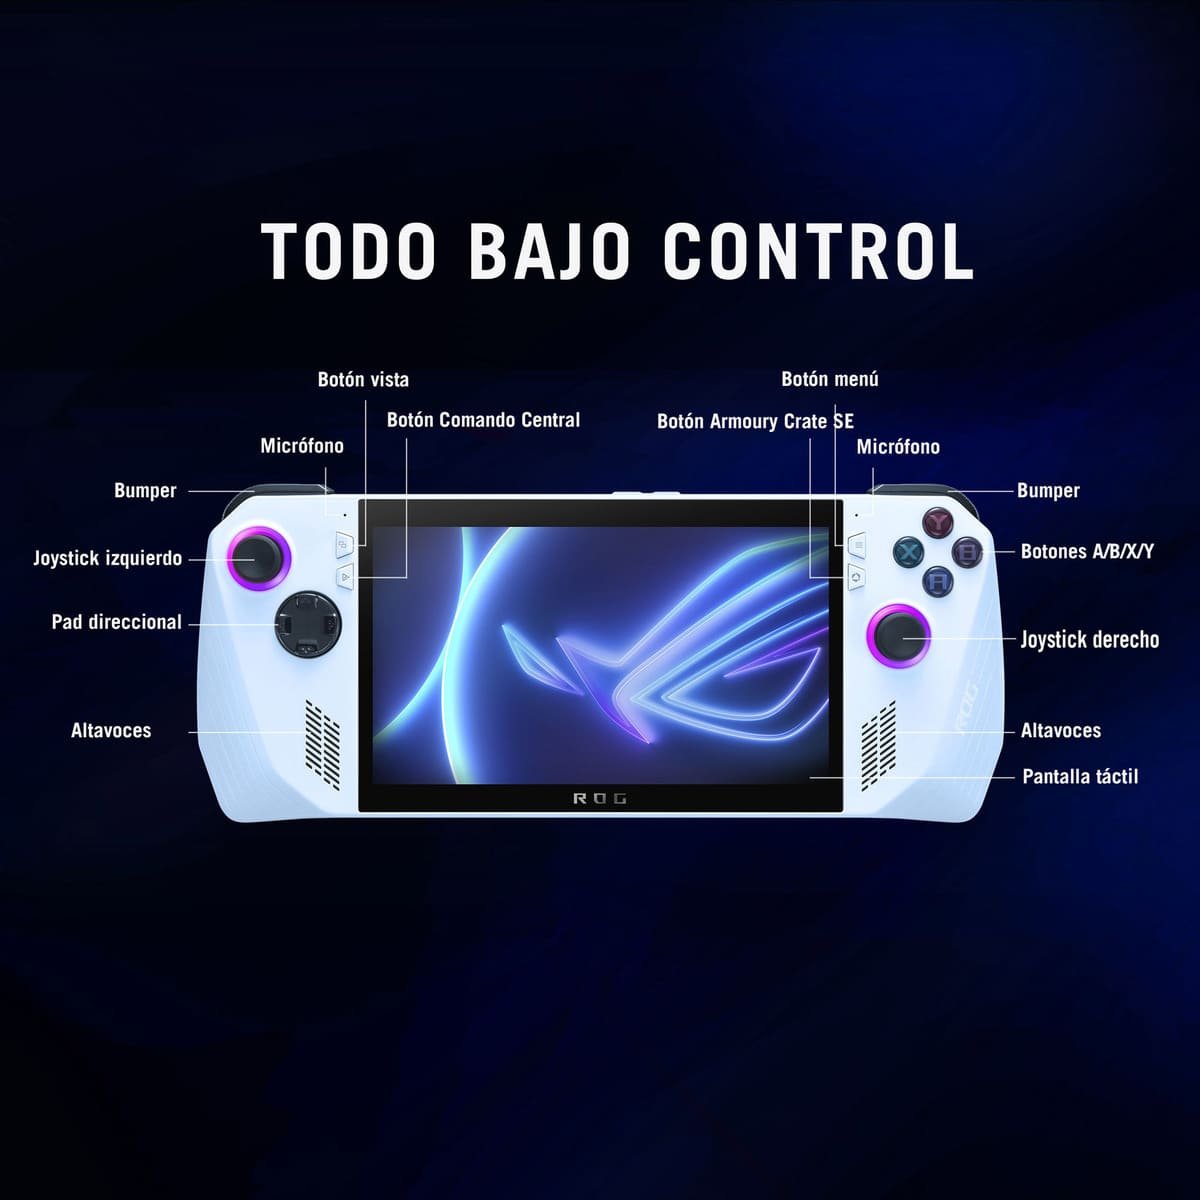 Asus ROG Ally: la Consola definitiva para juegos